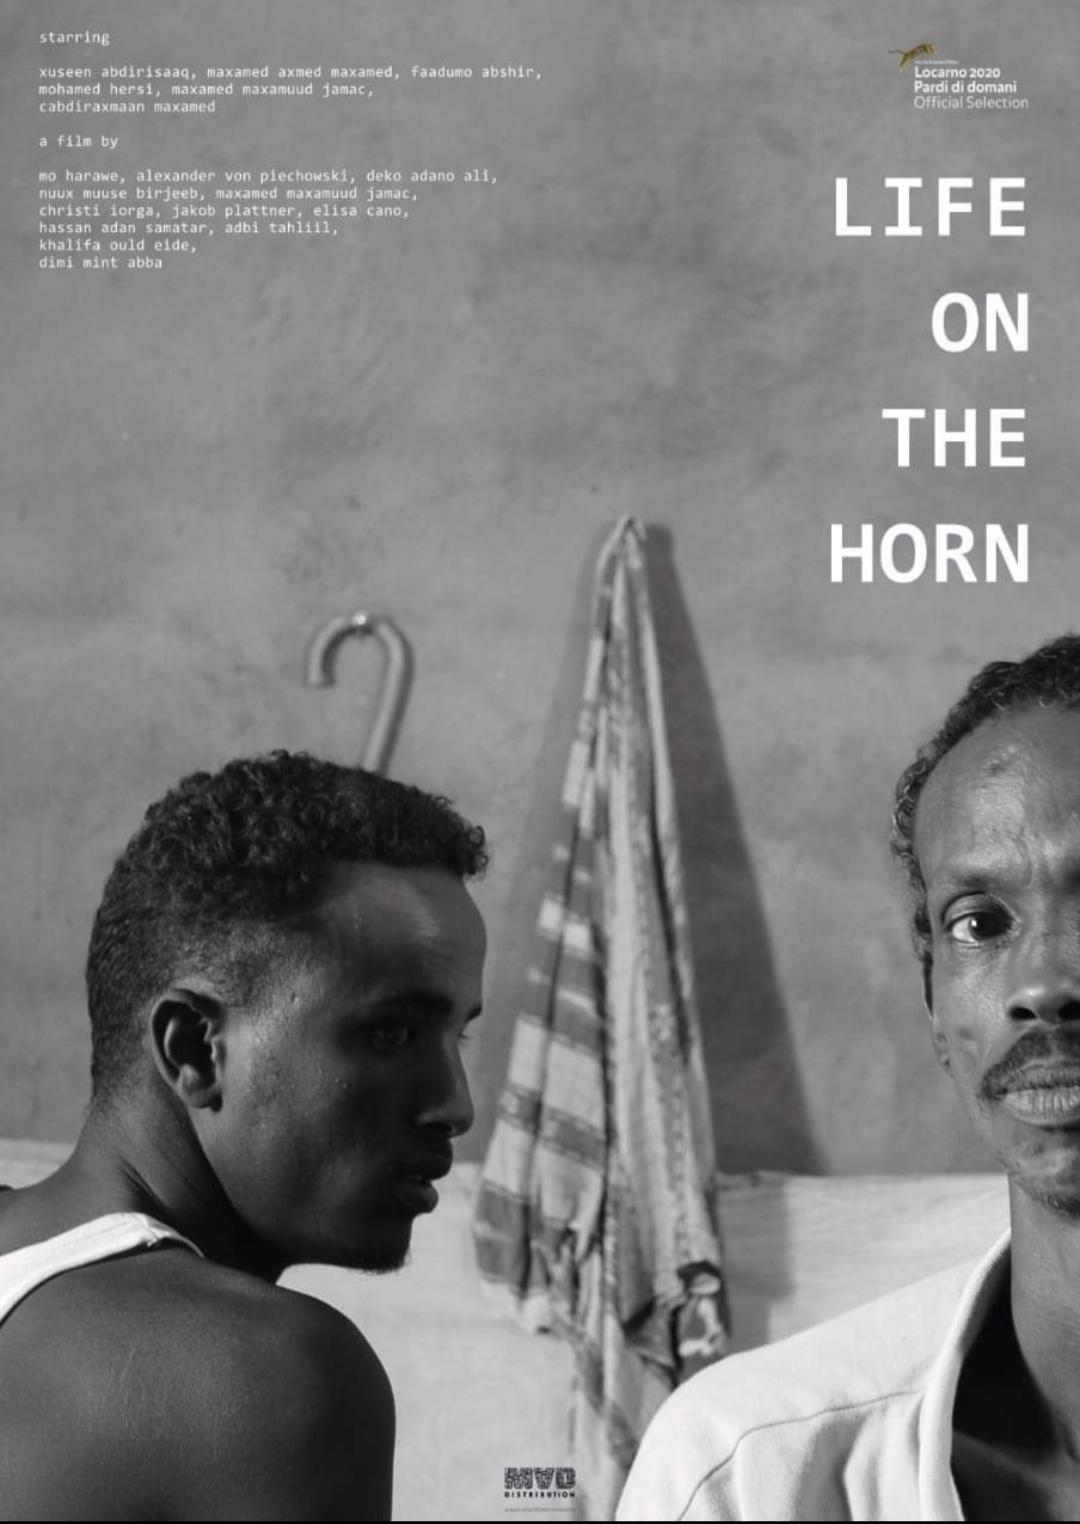 الفيلم يسلط الضوء على أزمة النفايات النووية الموجودة في دولة الصومال ( الأمة برس)